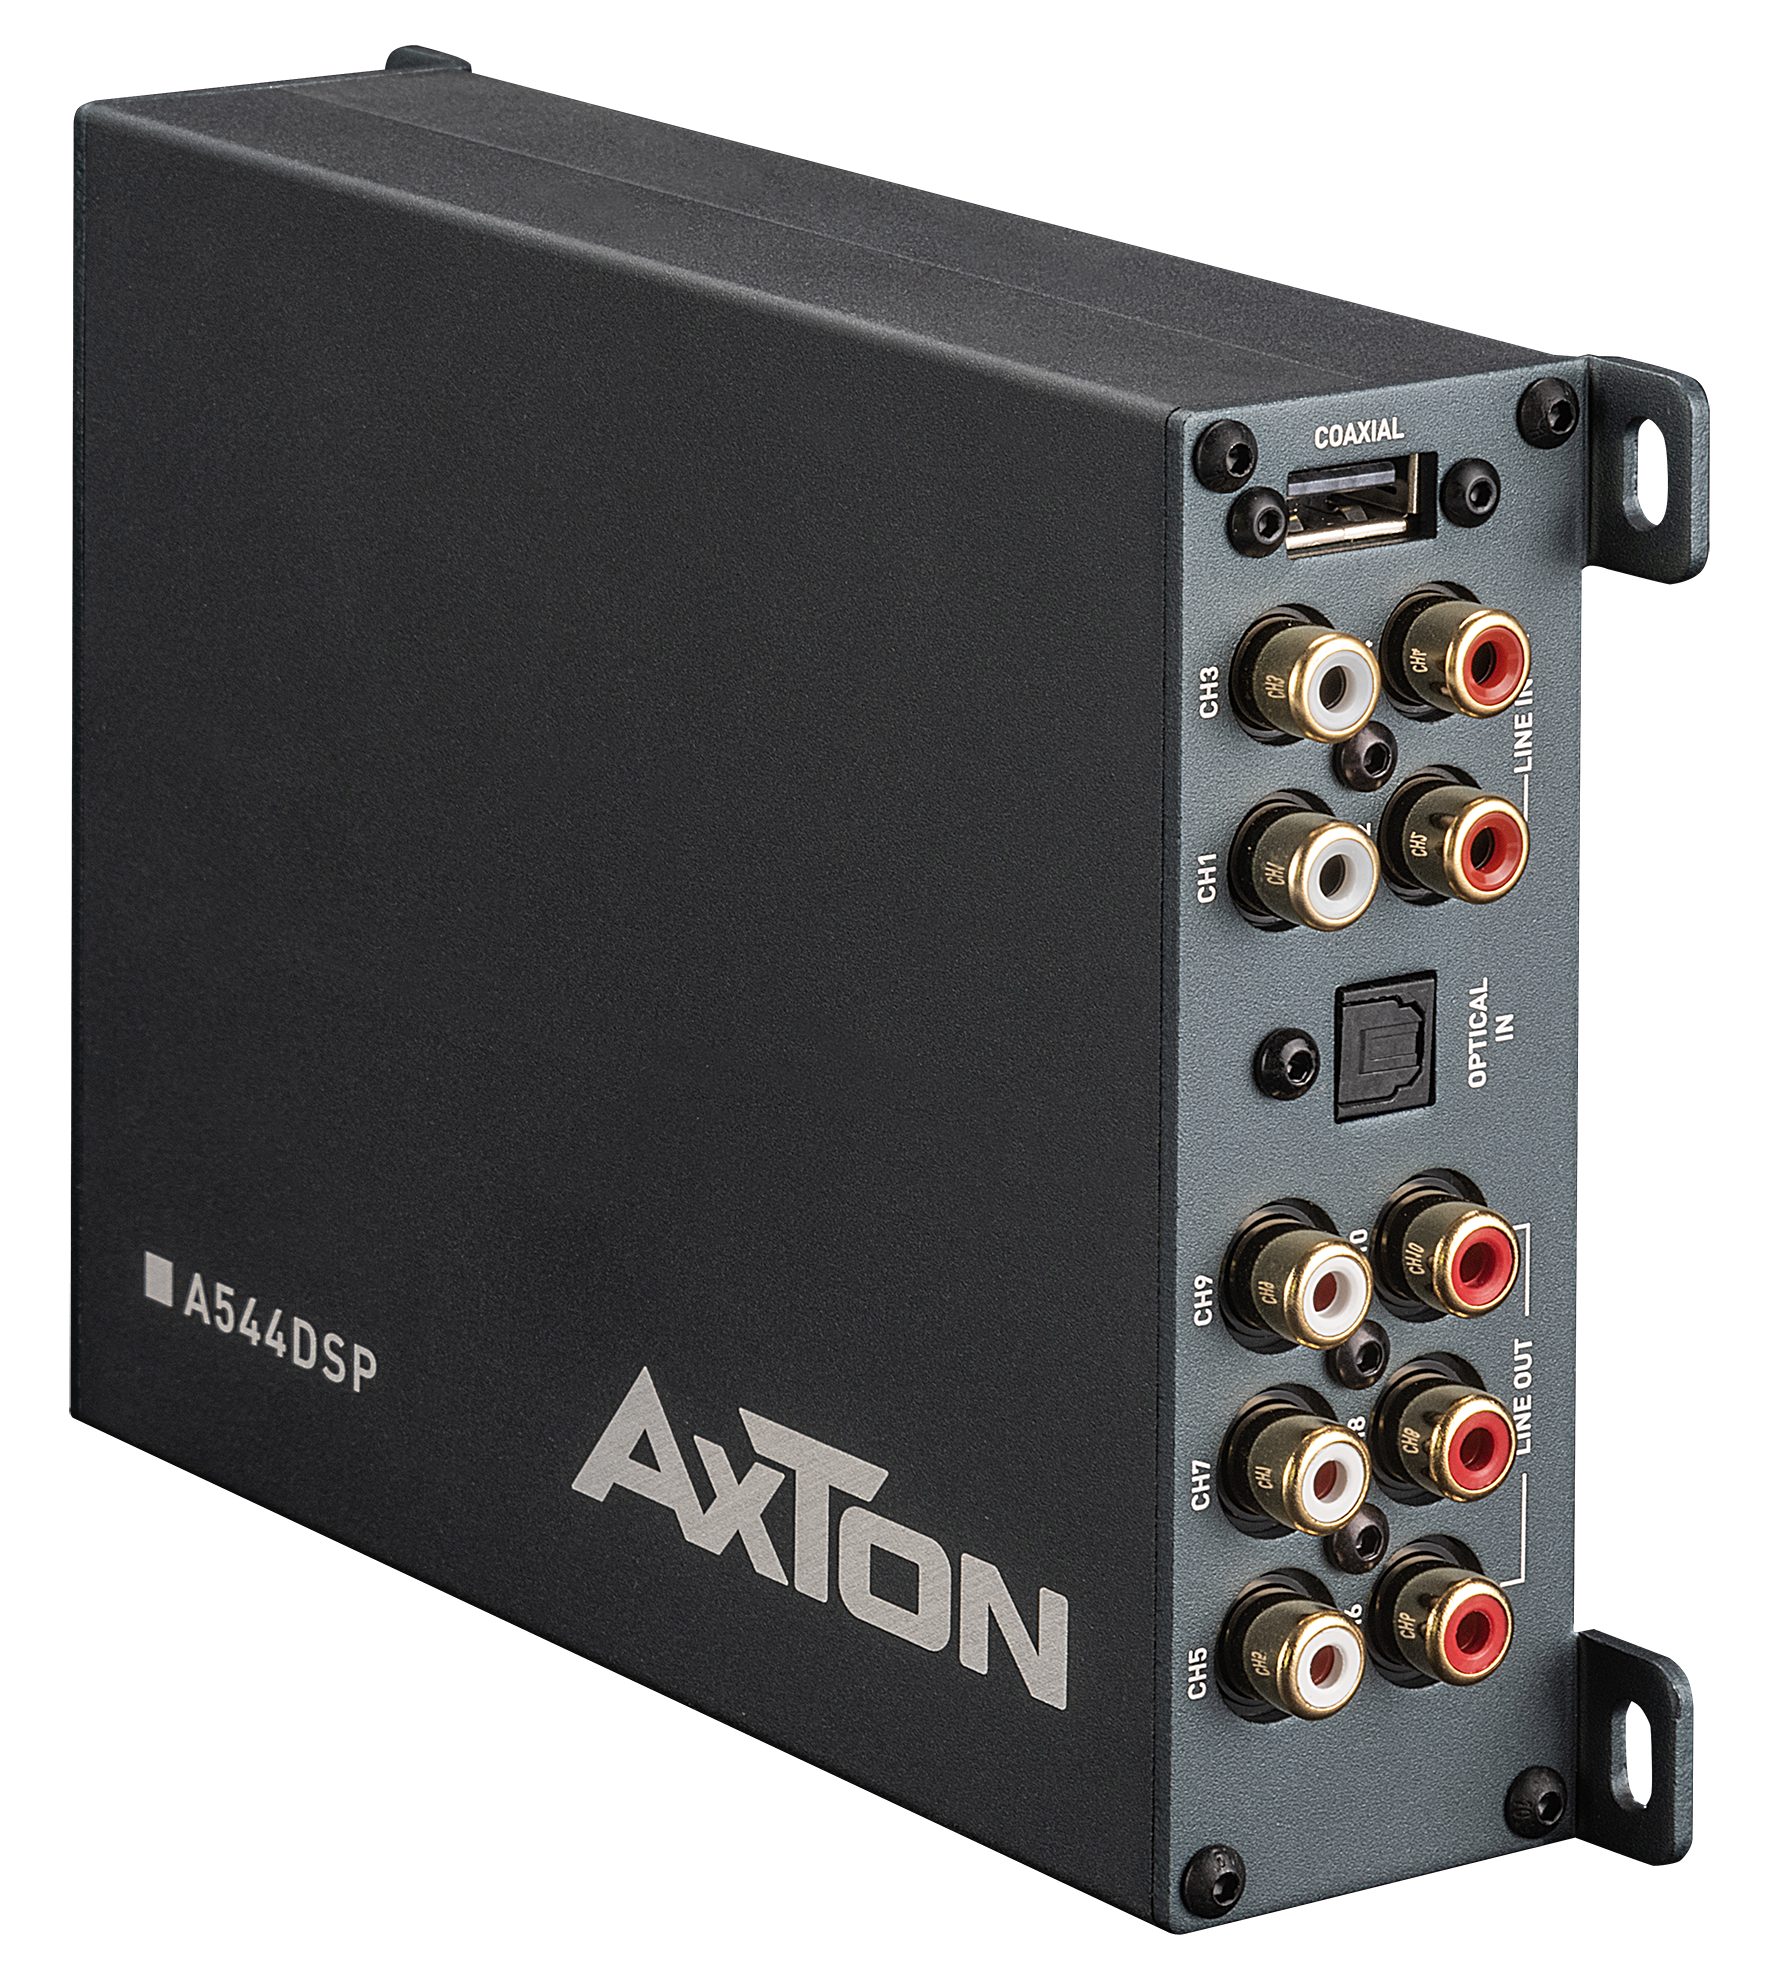 Hi-Res fähig A544DSP Verstärker Axton 4x50 Watt DSP-Verstärker 10 Kanal